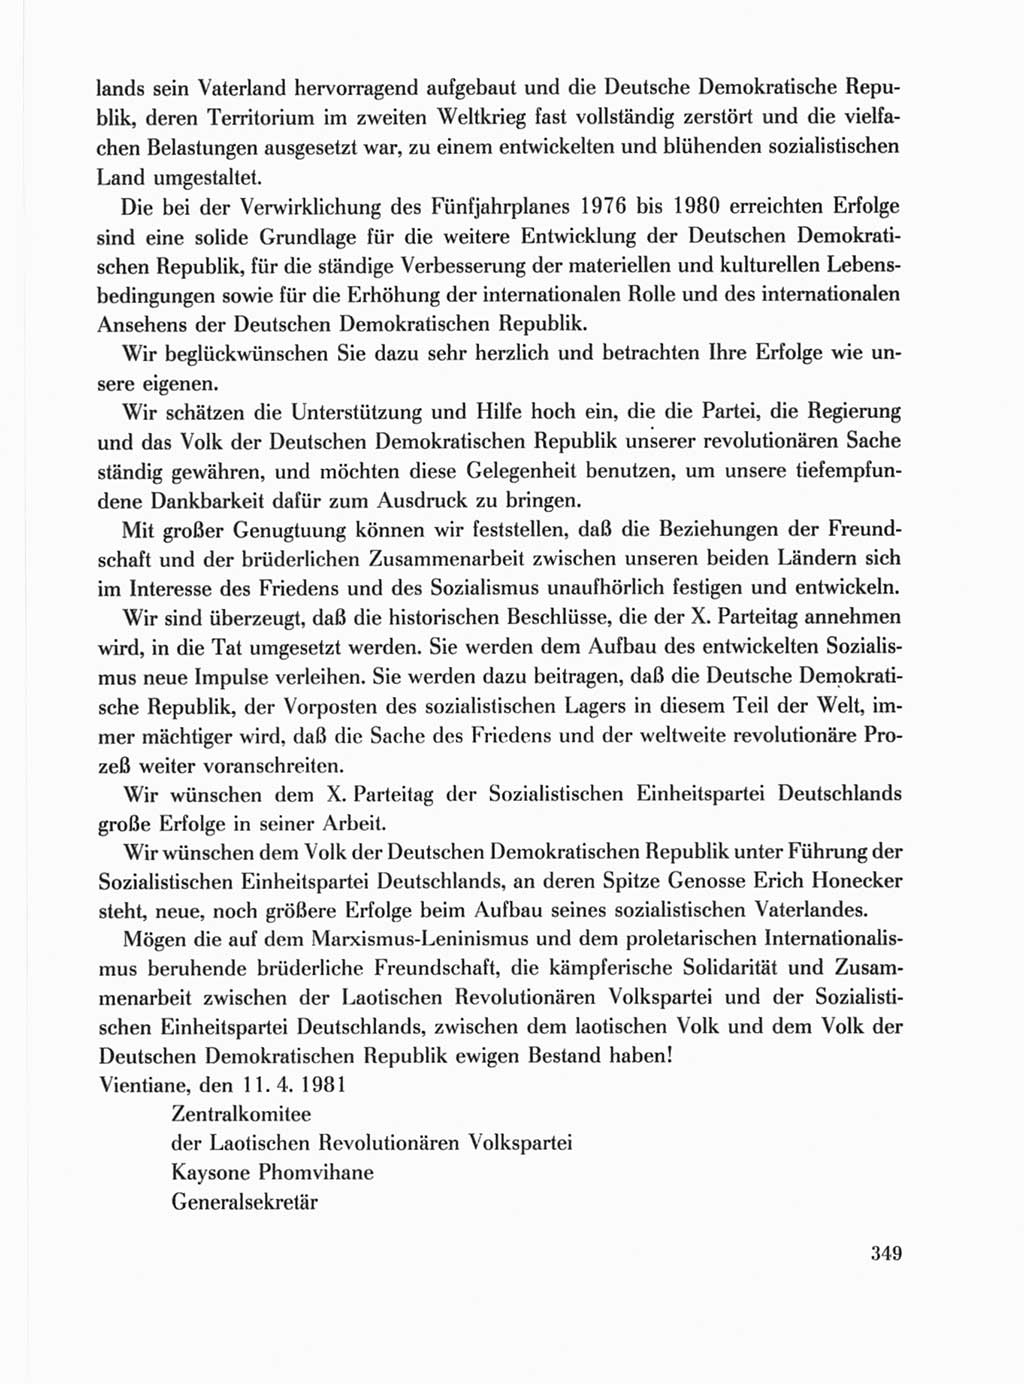 Protokoll der Verhandlungen des Ⅹ. Parteitages der Sozialistischen Einheitspartei Deutschlands (SED) [Deutsche Demokratische Republik (DDR)] 1981, Band 1, Seite 349 (Prot. Verh. Ⅹ. PT SED DDR 1981, Bd. 1, S. 349)